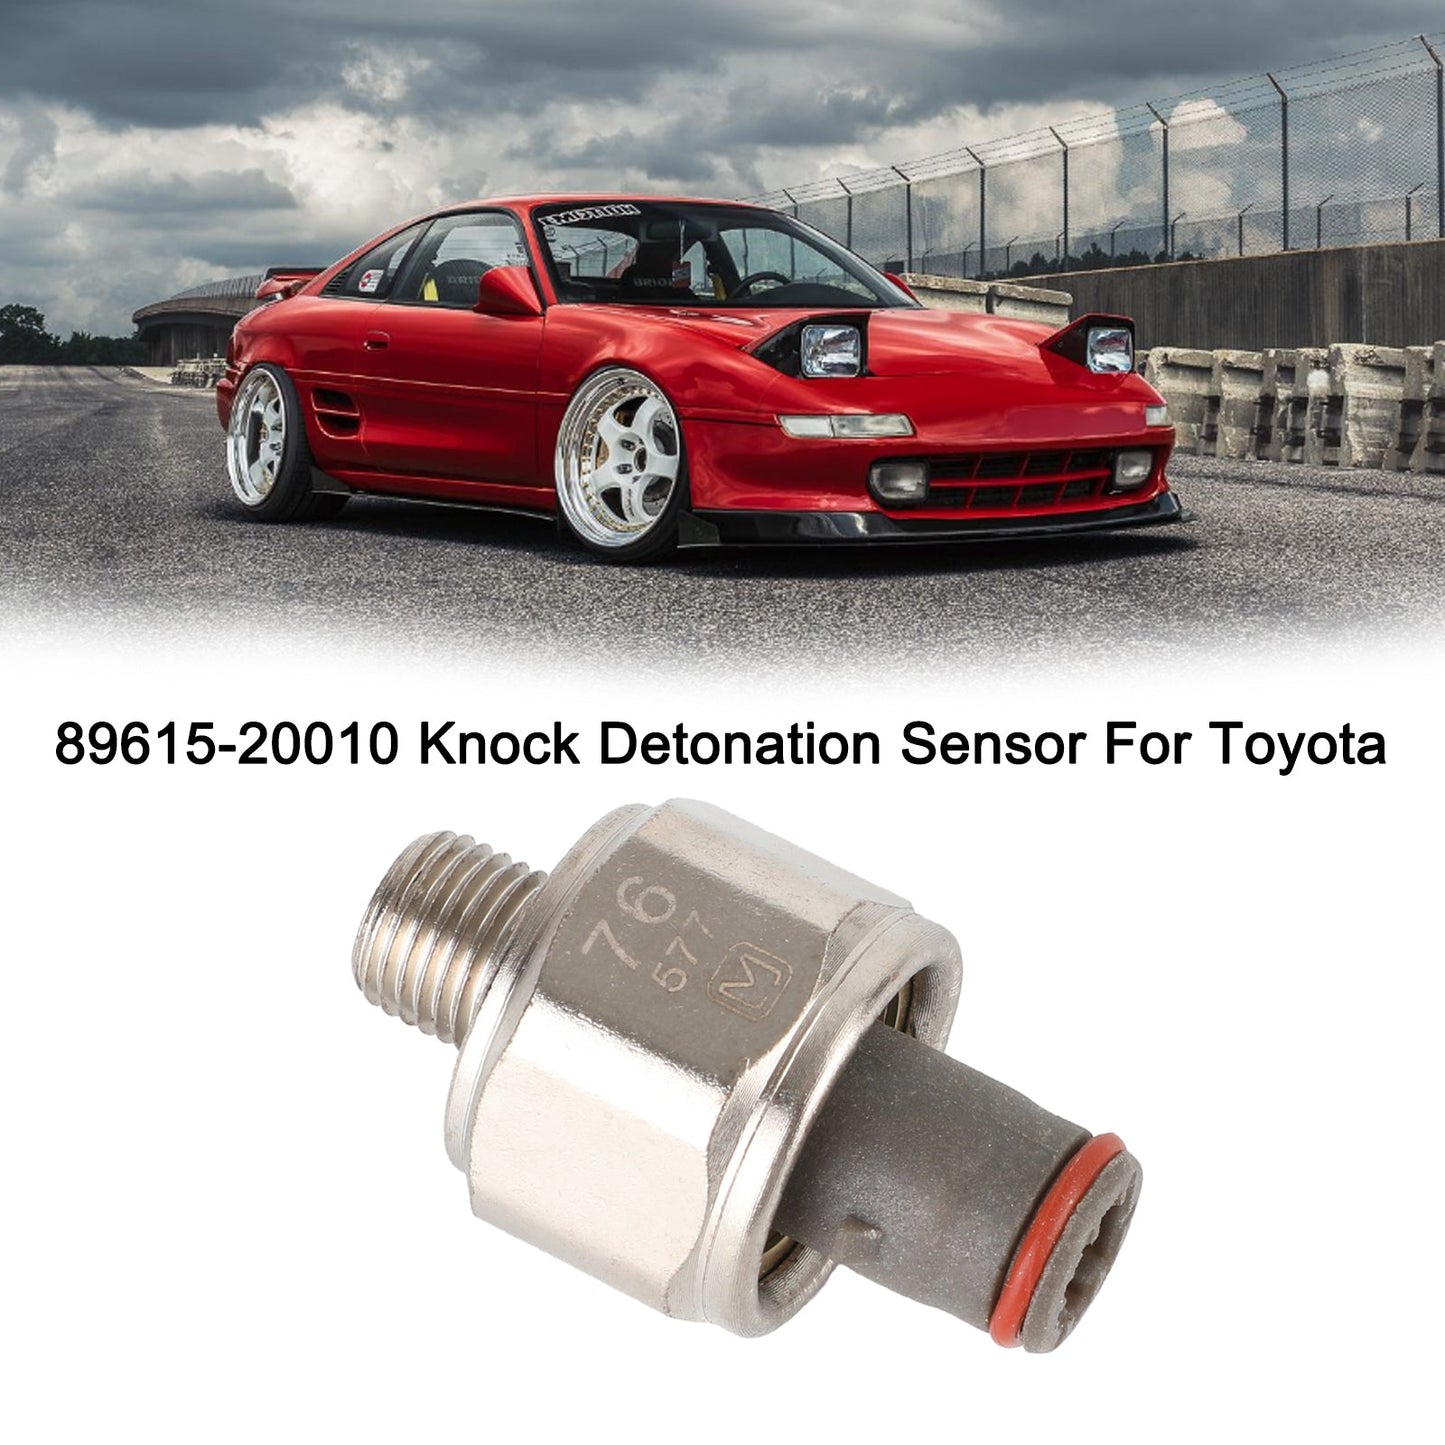 Ignition Knock Detonation Sensor 89615-20010 Fit For Lexus LS400 Toyota 4Runner